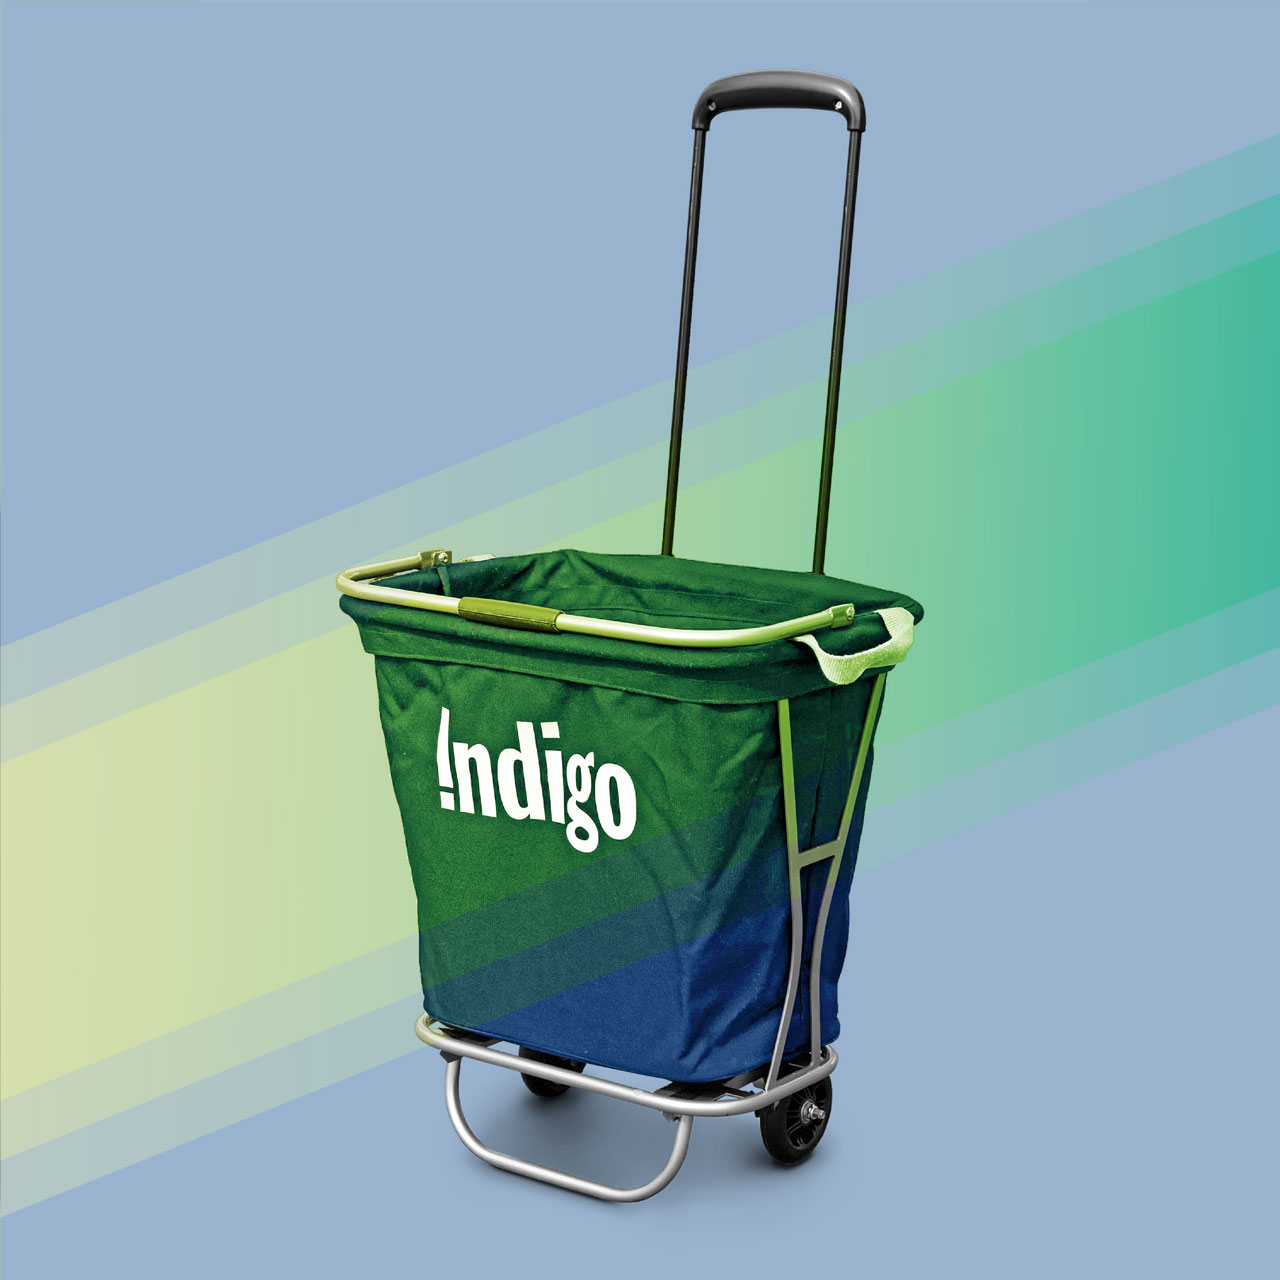 Indigo Shopping Cart Design